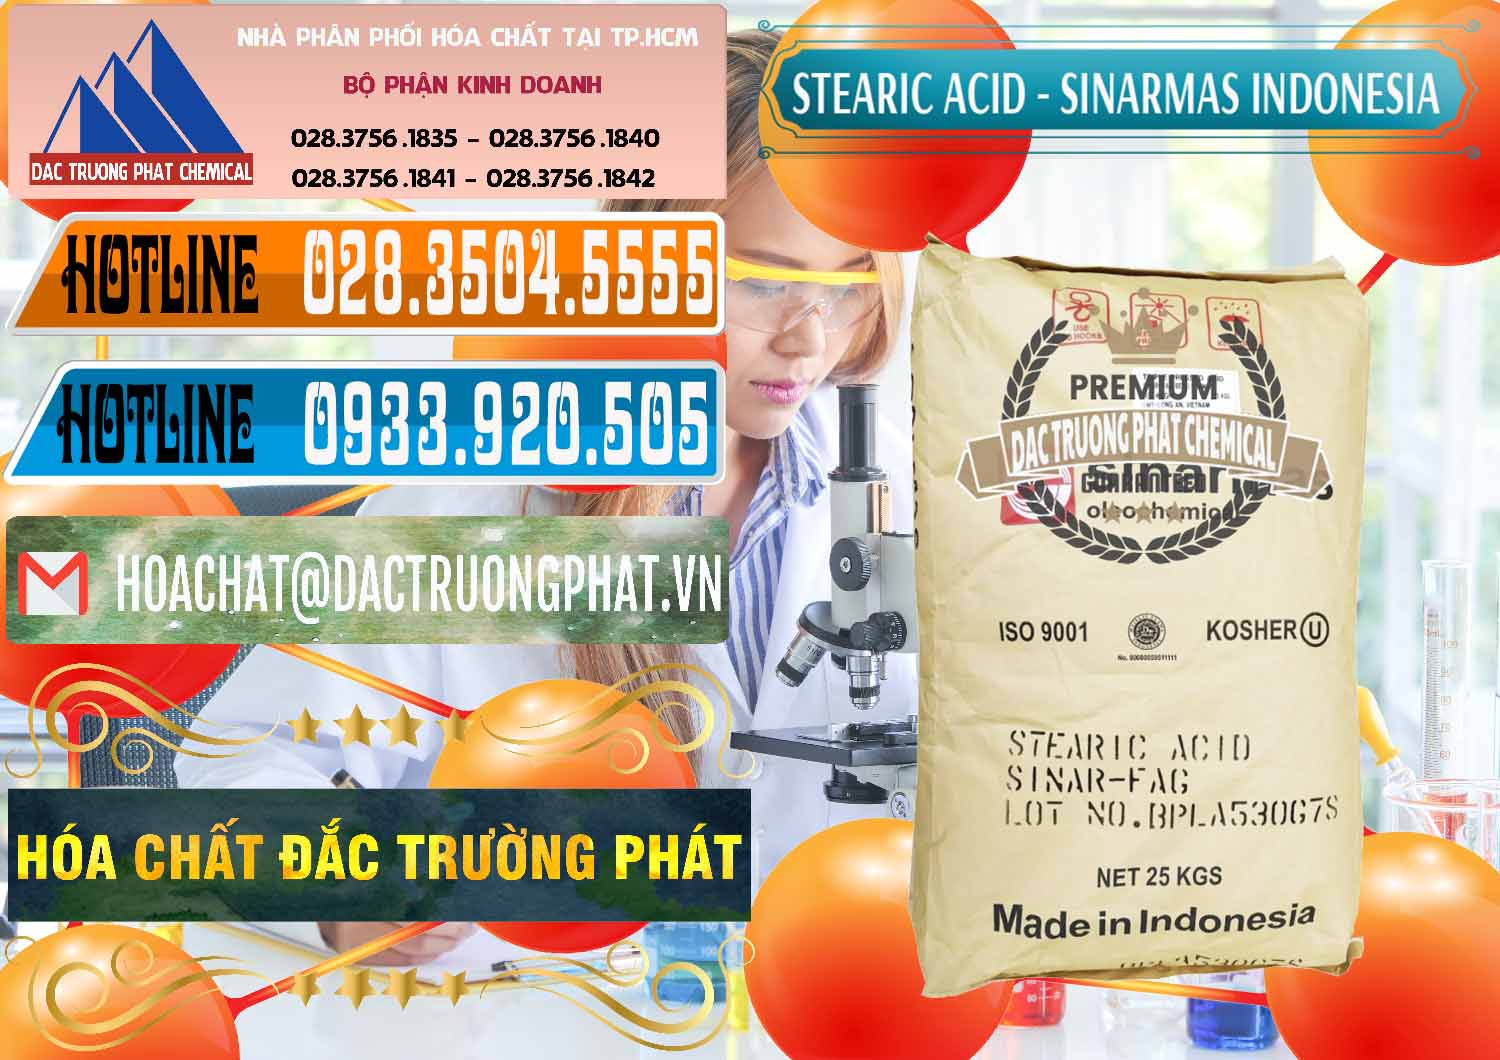 Đơn vị chuyên cung cấp _ bán Axit Stearic - Stearic Acid Sinarmas Indonesia - 0389 - Công ty kinh doanh & cung cấp hóa chất tại TP.HCM - stmp.net